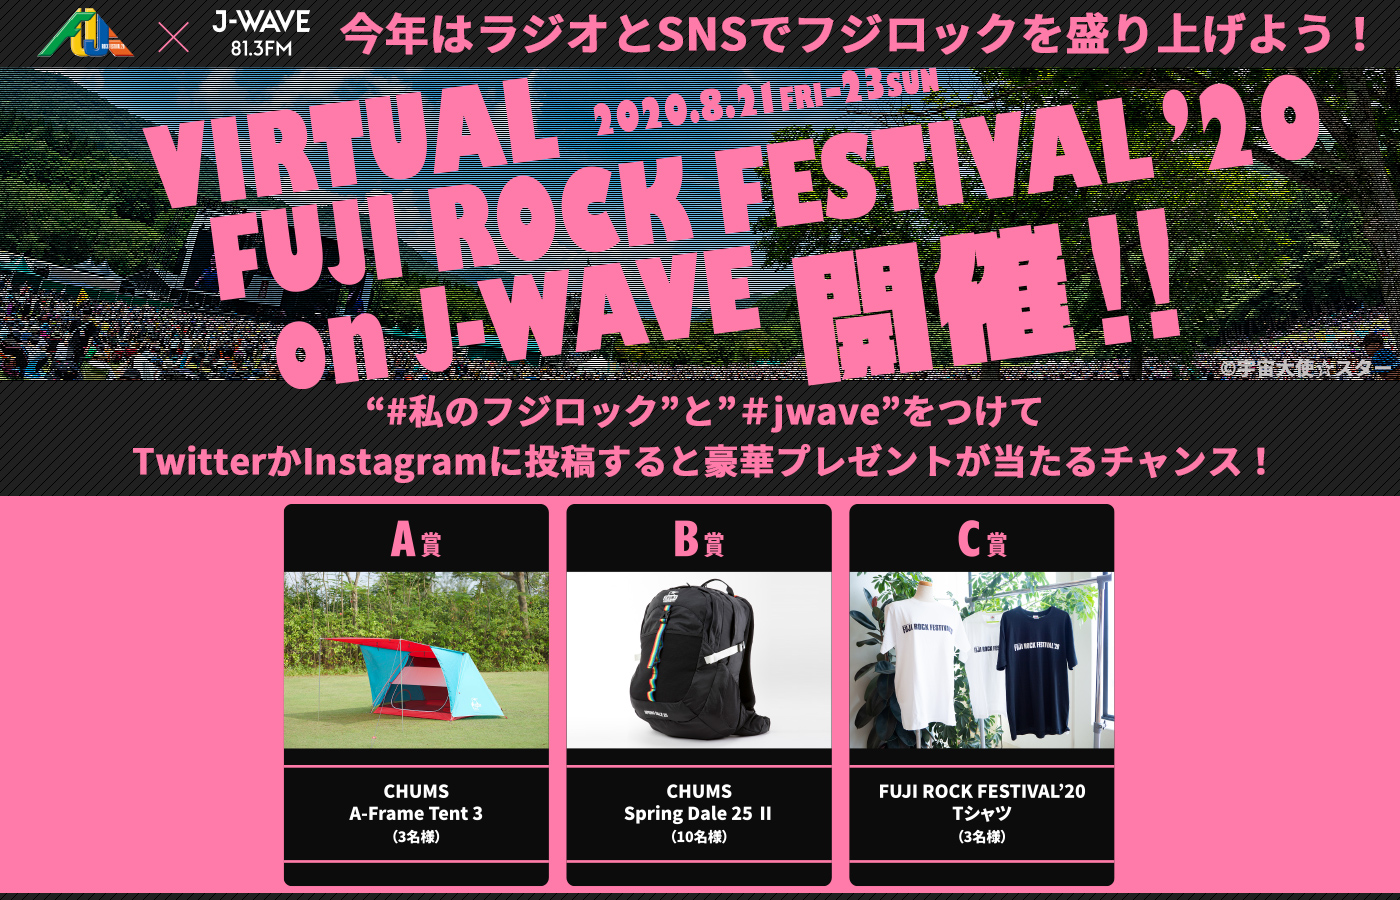 今年はj Wave 81 3fm でフジロック 8月21日 金 22日 土 23日 日 特別企画 Virtual Fuji Rock Festival On J Wave をオンエア J Wave 81 3fm のプレスリリース